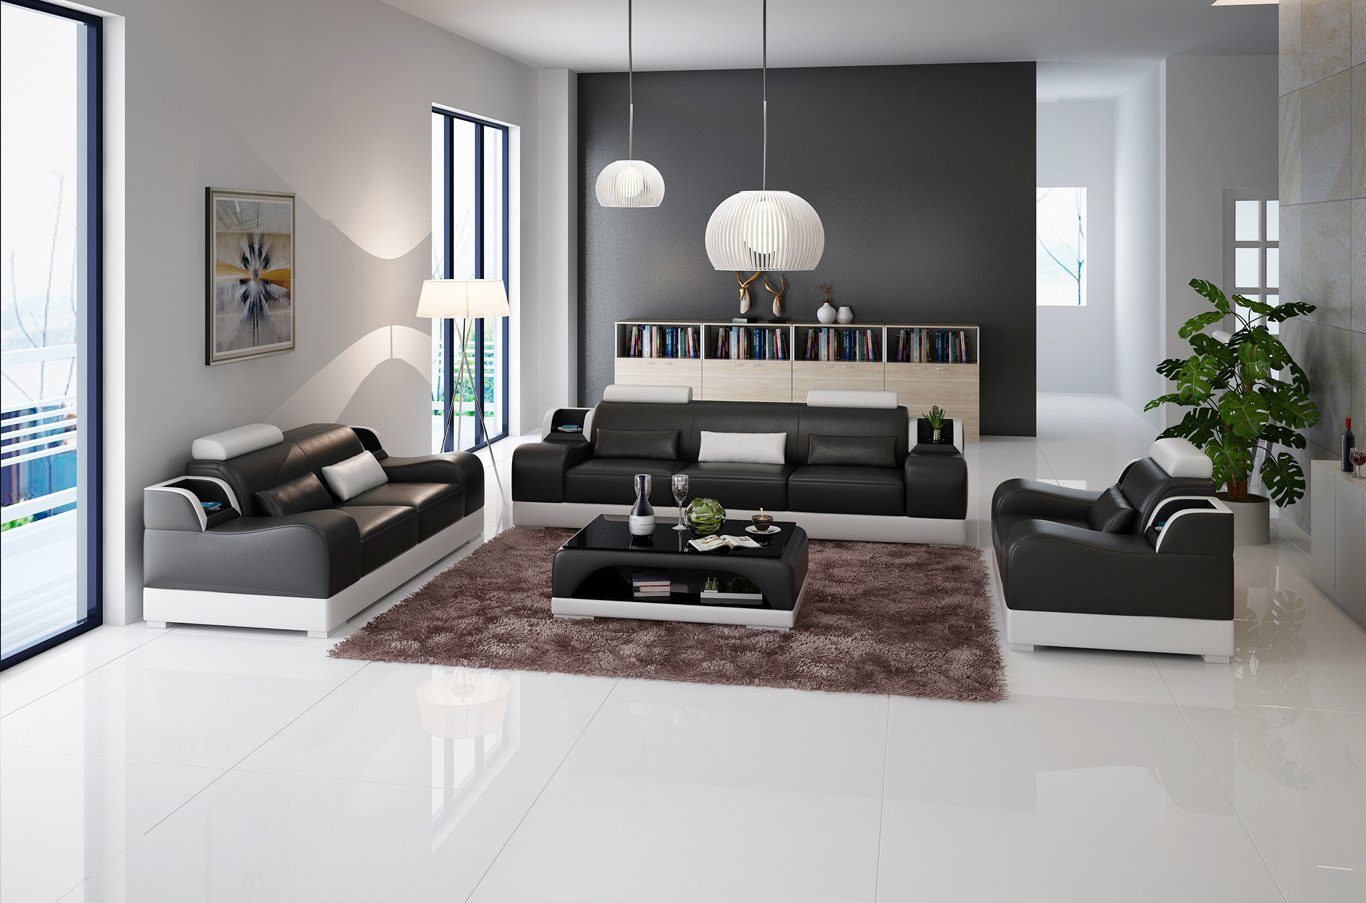 Sitzer Made Modern Luxus Neu, JVmoebel Design Couchen Couch Sofa in 3+2+2 Polster Europe Sofa Set Schwarz/Weiß